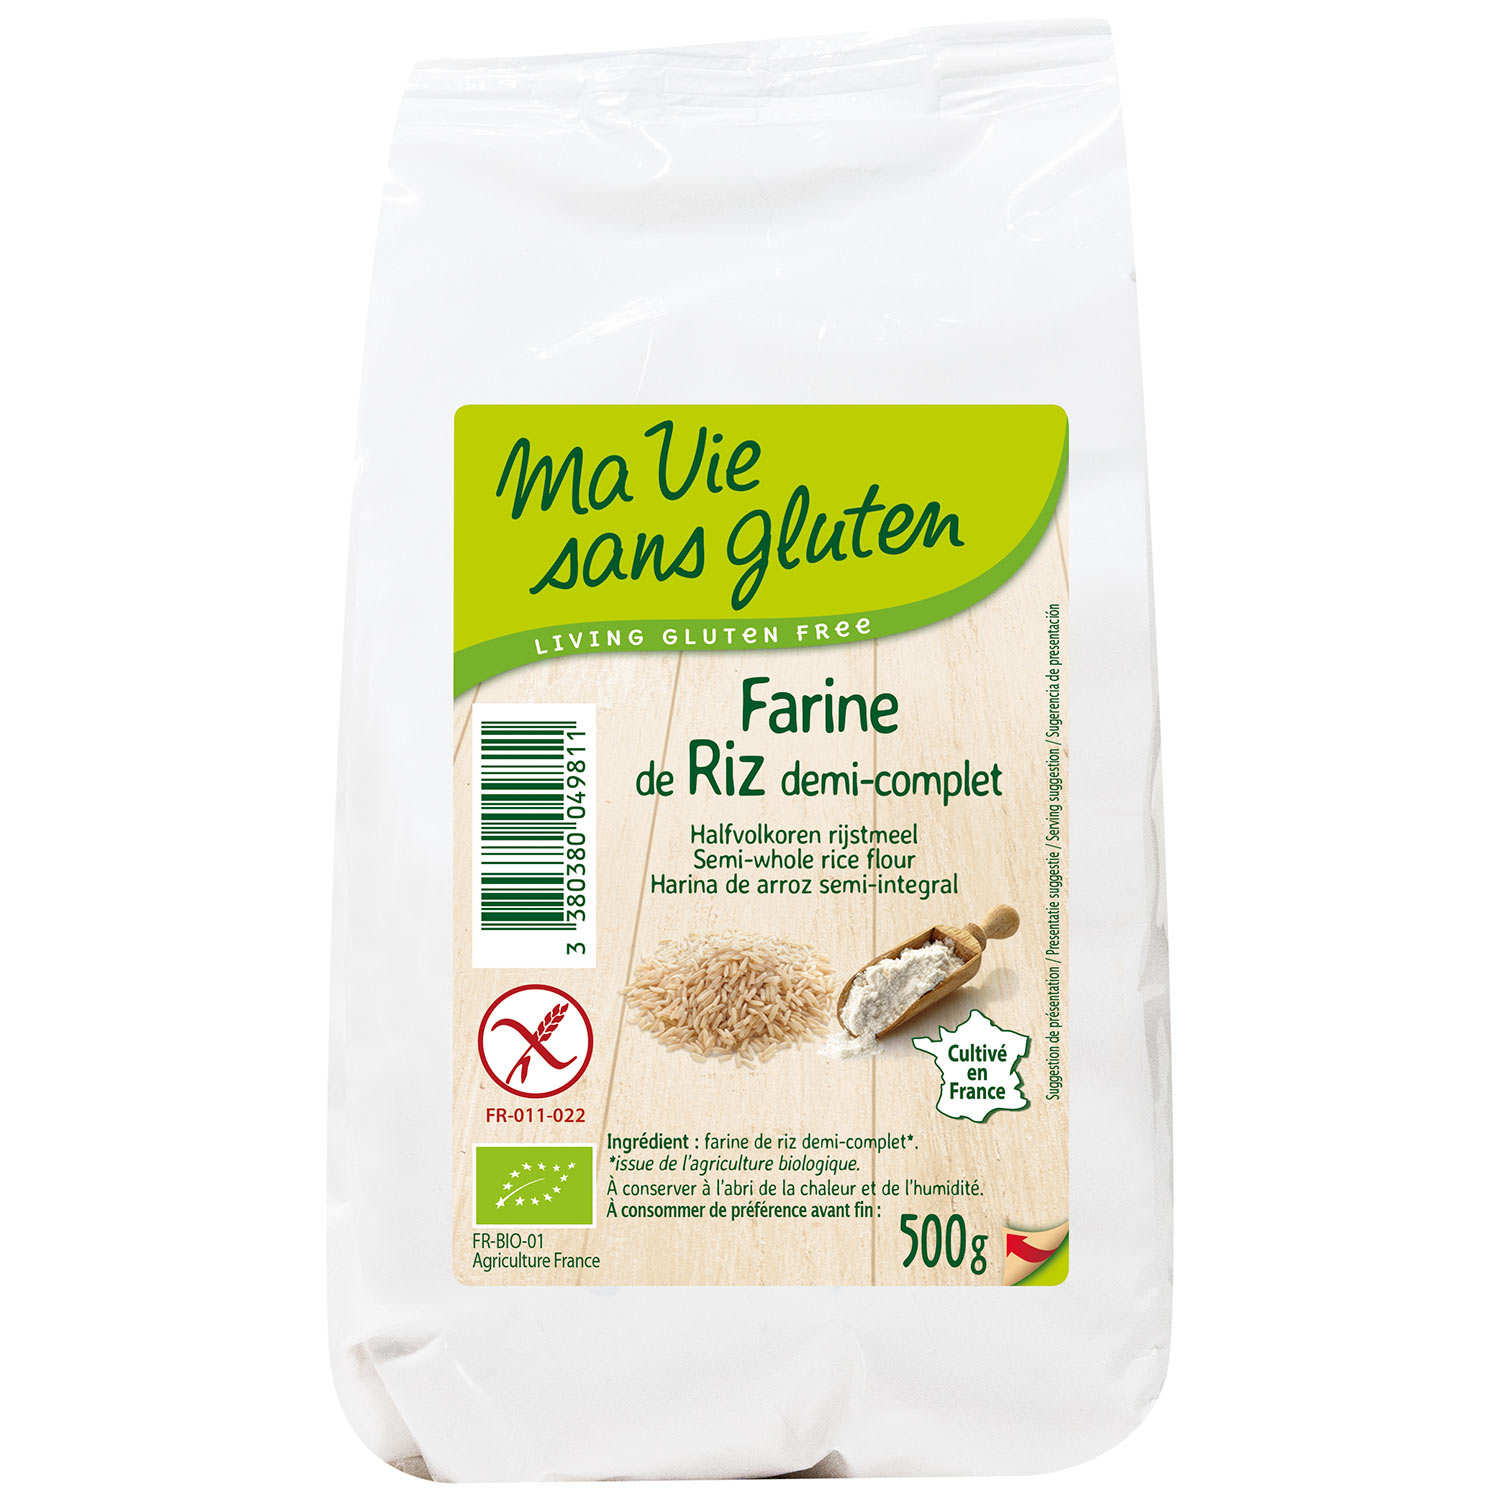 Farine de riz demi-complète bio garantie sans gluten - Ma vie sans gluten